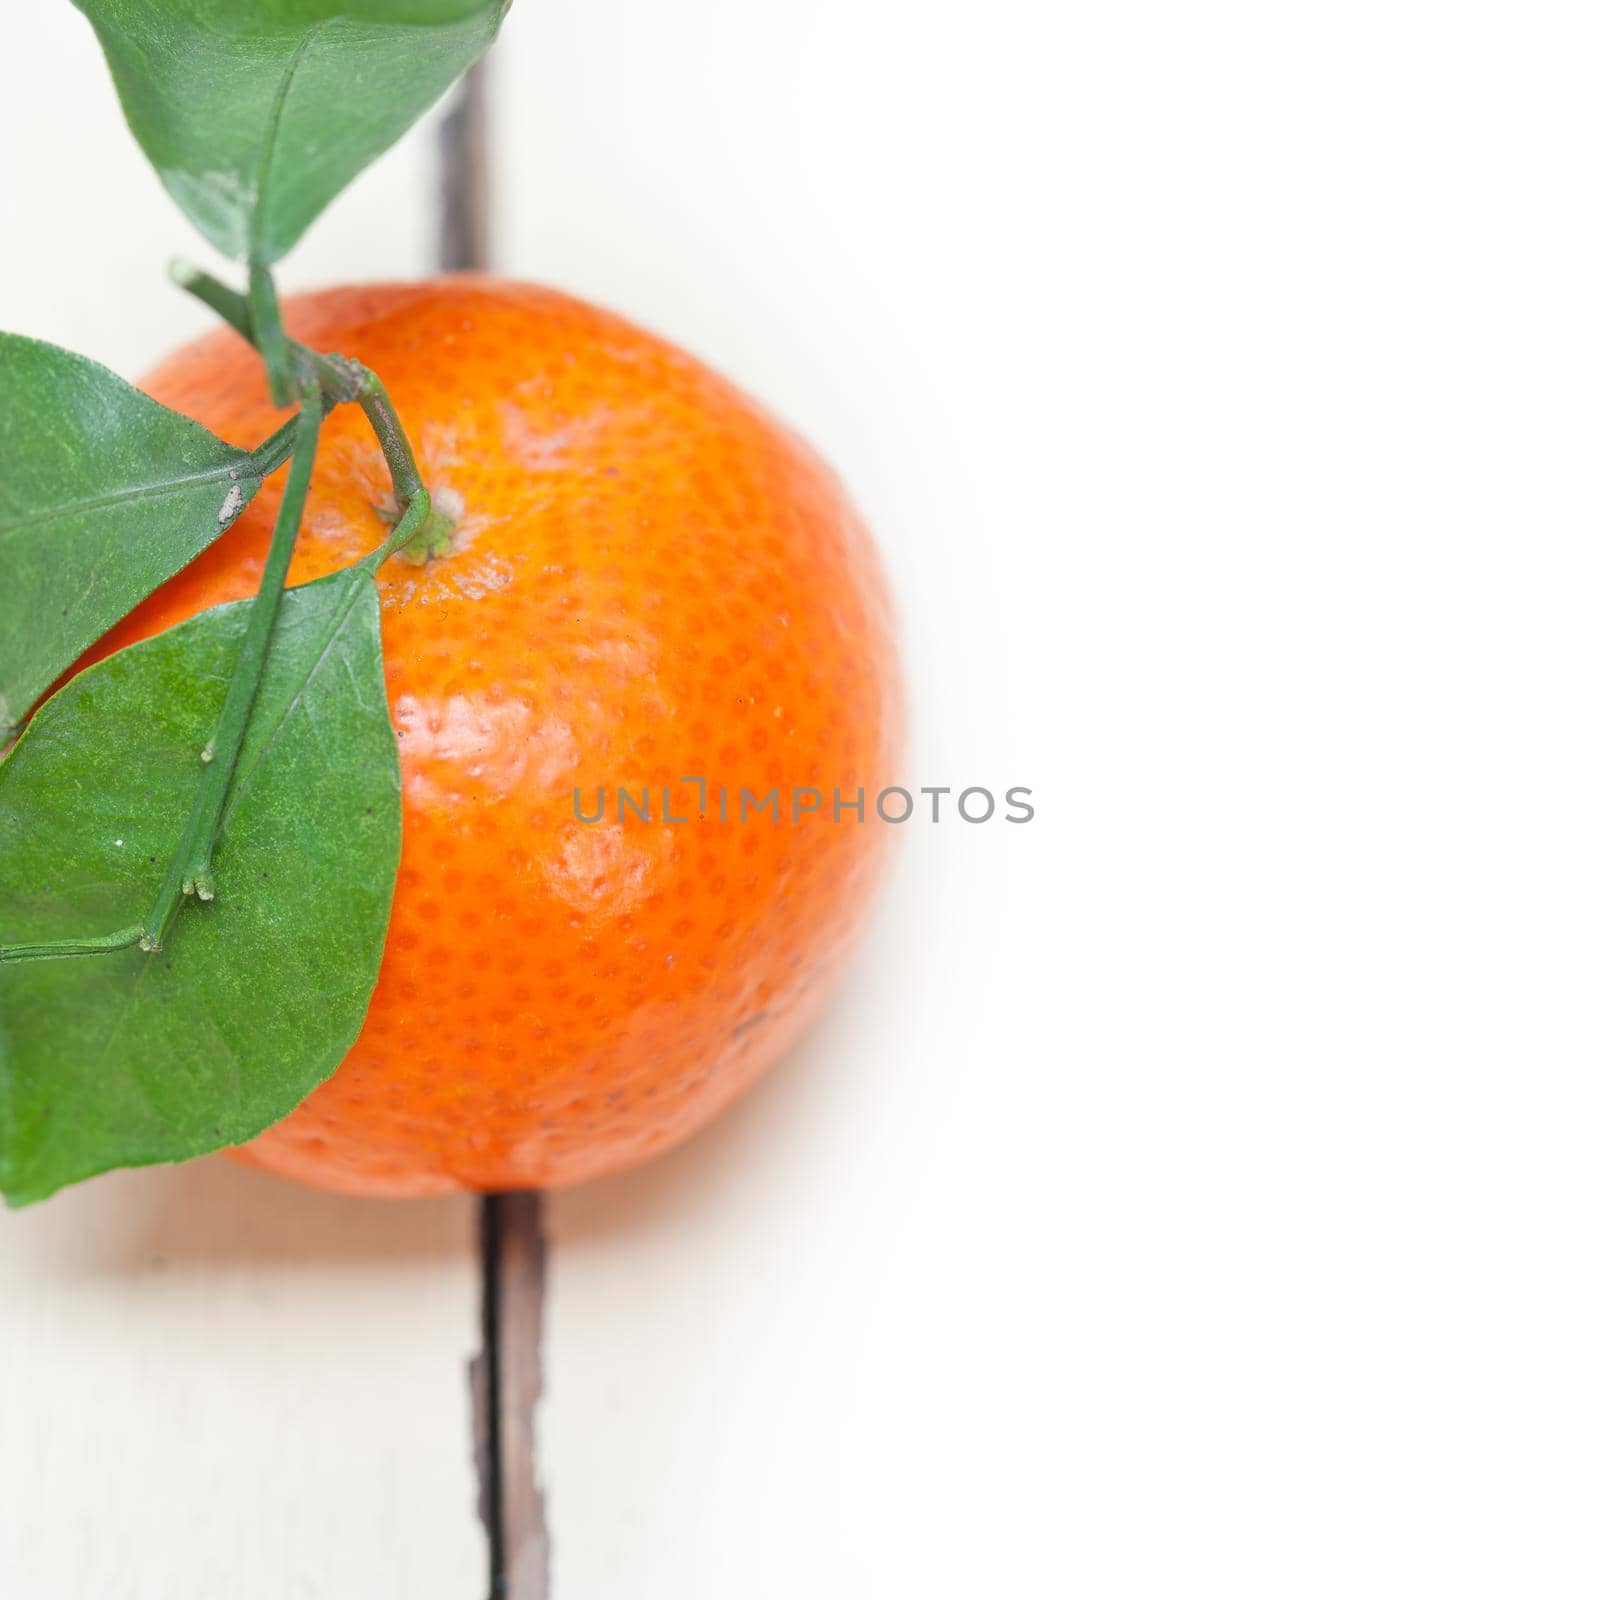 tangerine mandarin orange on white table by keko64